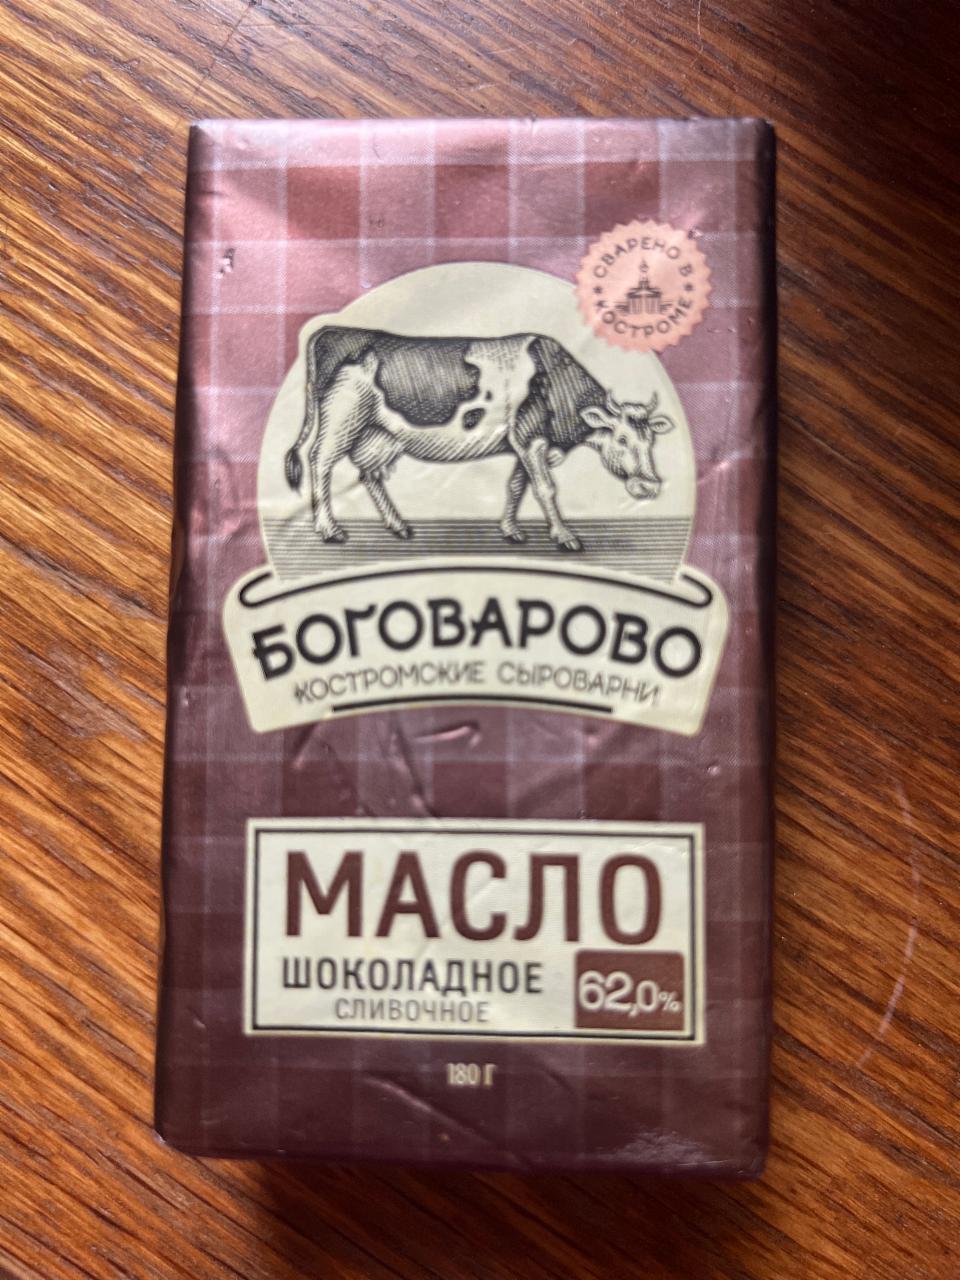 Фото - масло шоколадное сливочное 62% Боговарово